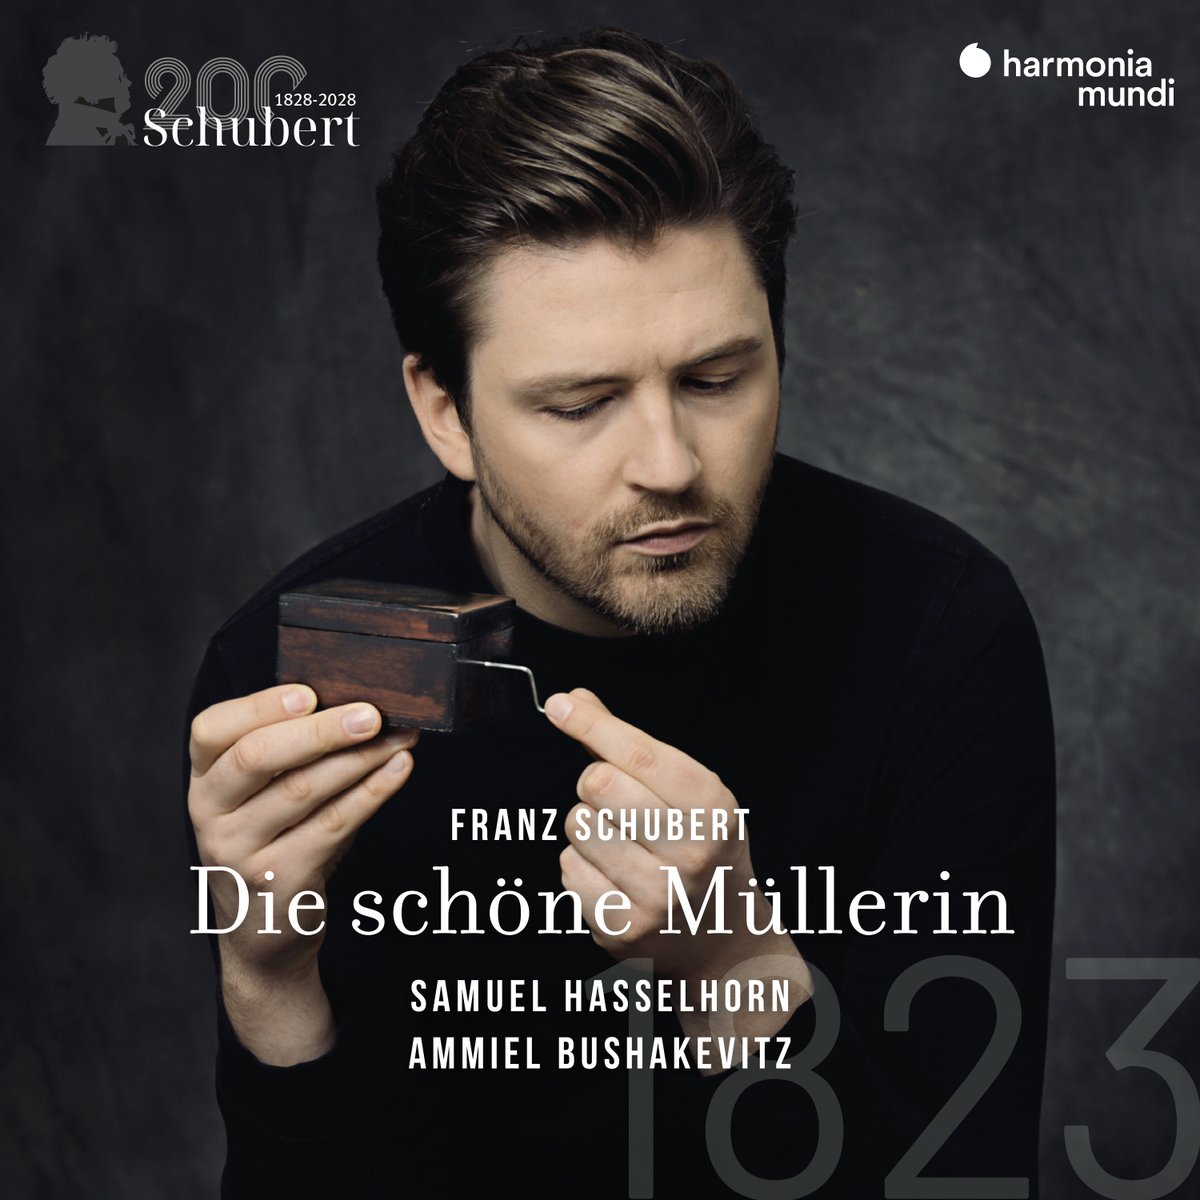 [NOUVEAU] Die schöne Müllerin | Franz Schubert Samuel Hasselhorn @Ammiel_B Découvrez une lecture poétique et poignante de ce chef-d'œuvre fondateur du lied allemand! 👉Ecoutez ici: lnk.to/SchubertMuller…